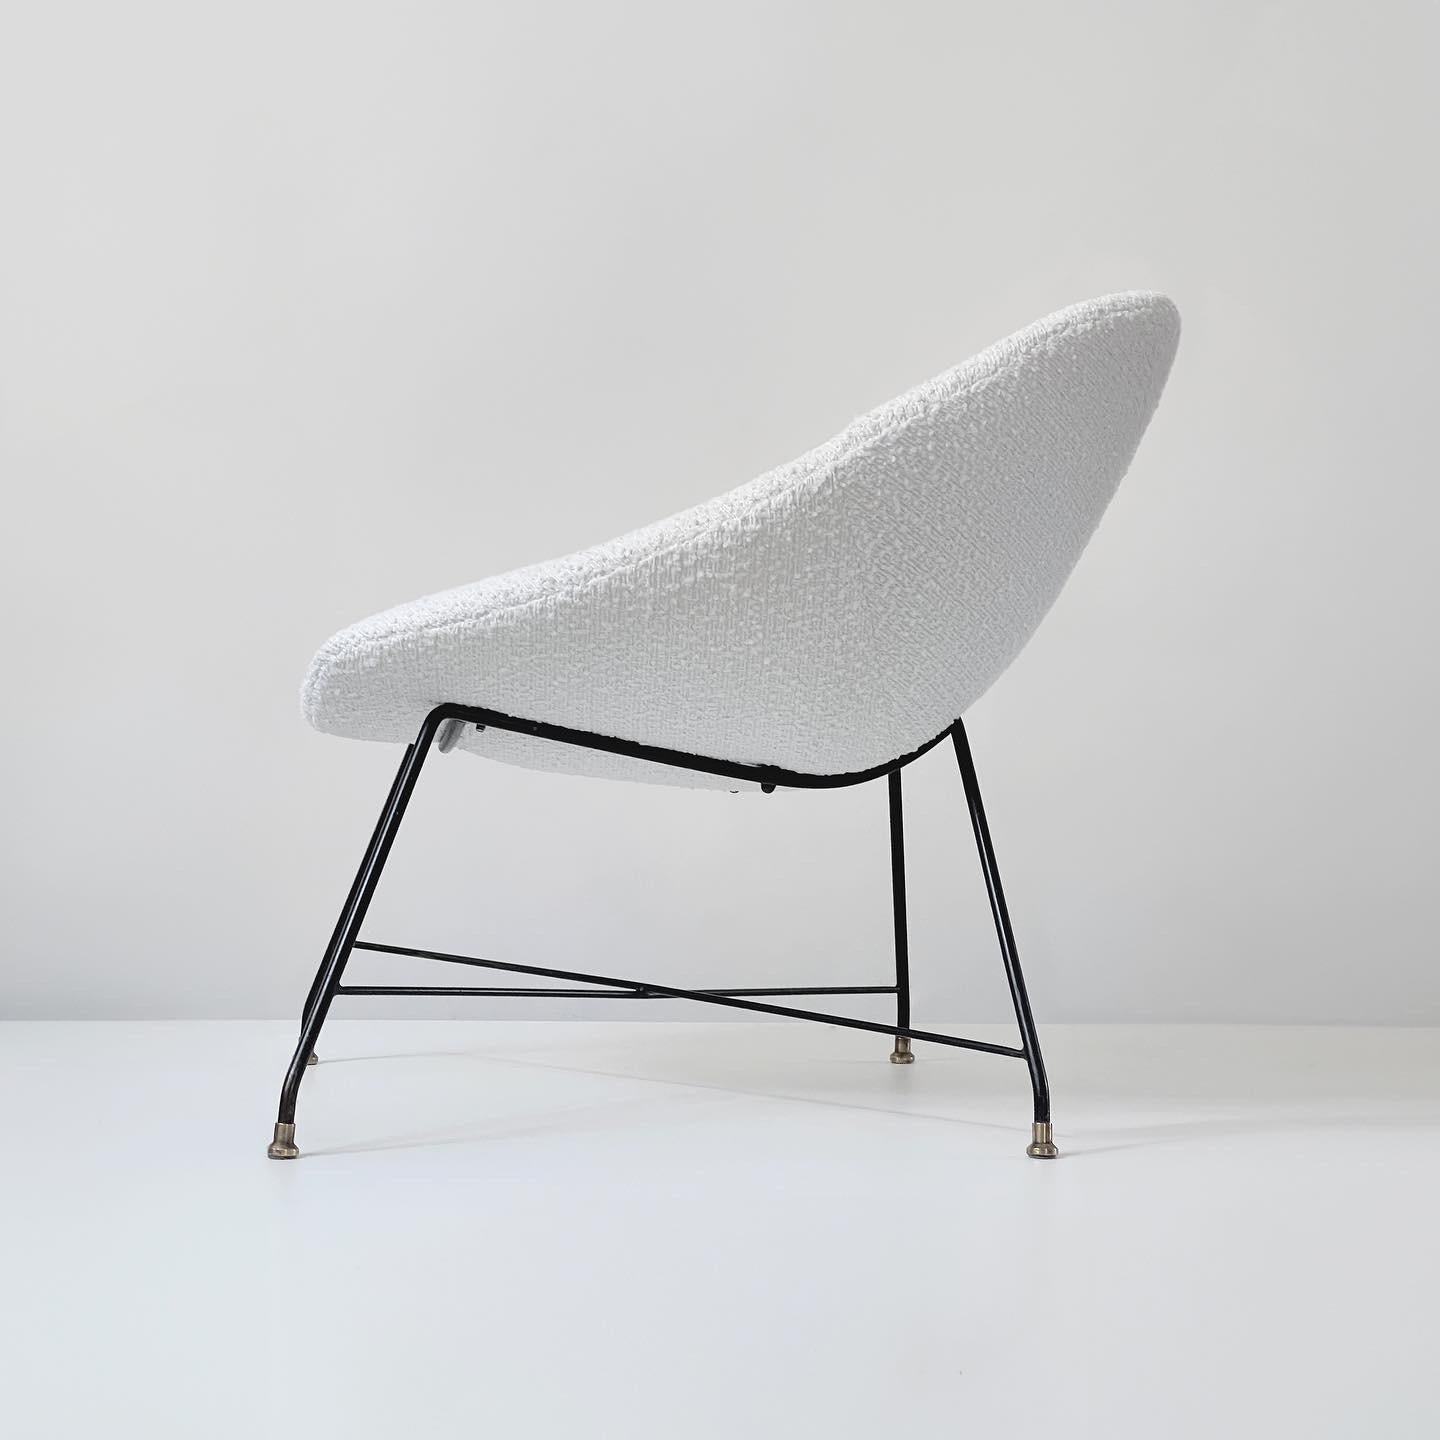 La chaise Minoletta, chef-d'œuvre conçu par Augusto Bozzi pour Saporiti, est un exemple d'élégance et de confort. Fabriqué à l'origine avec une attention exquise aux détails, il présente un design épuré avec des lignes nettes et une fabrication